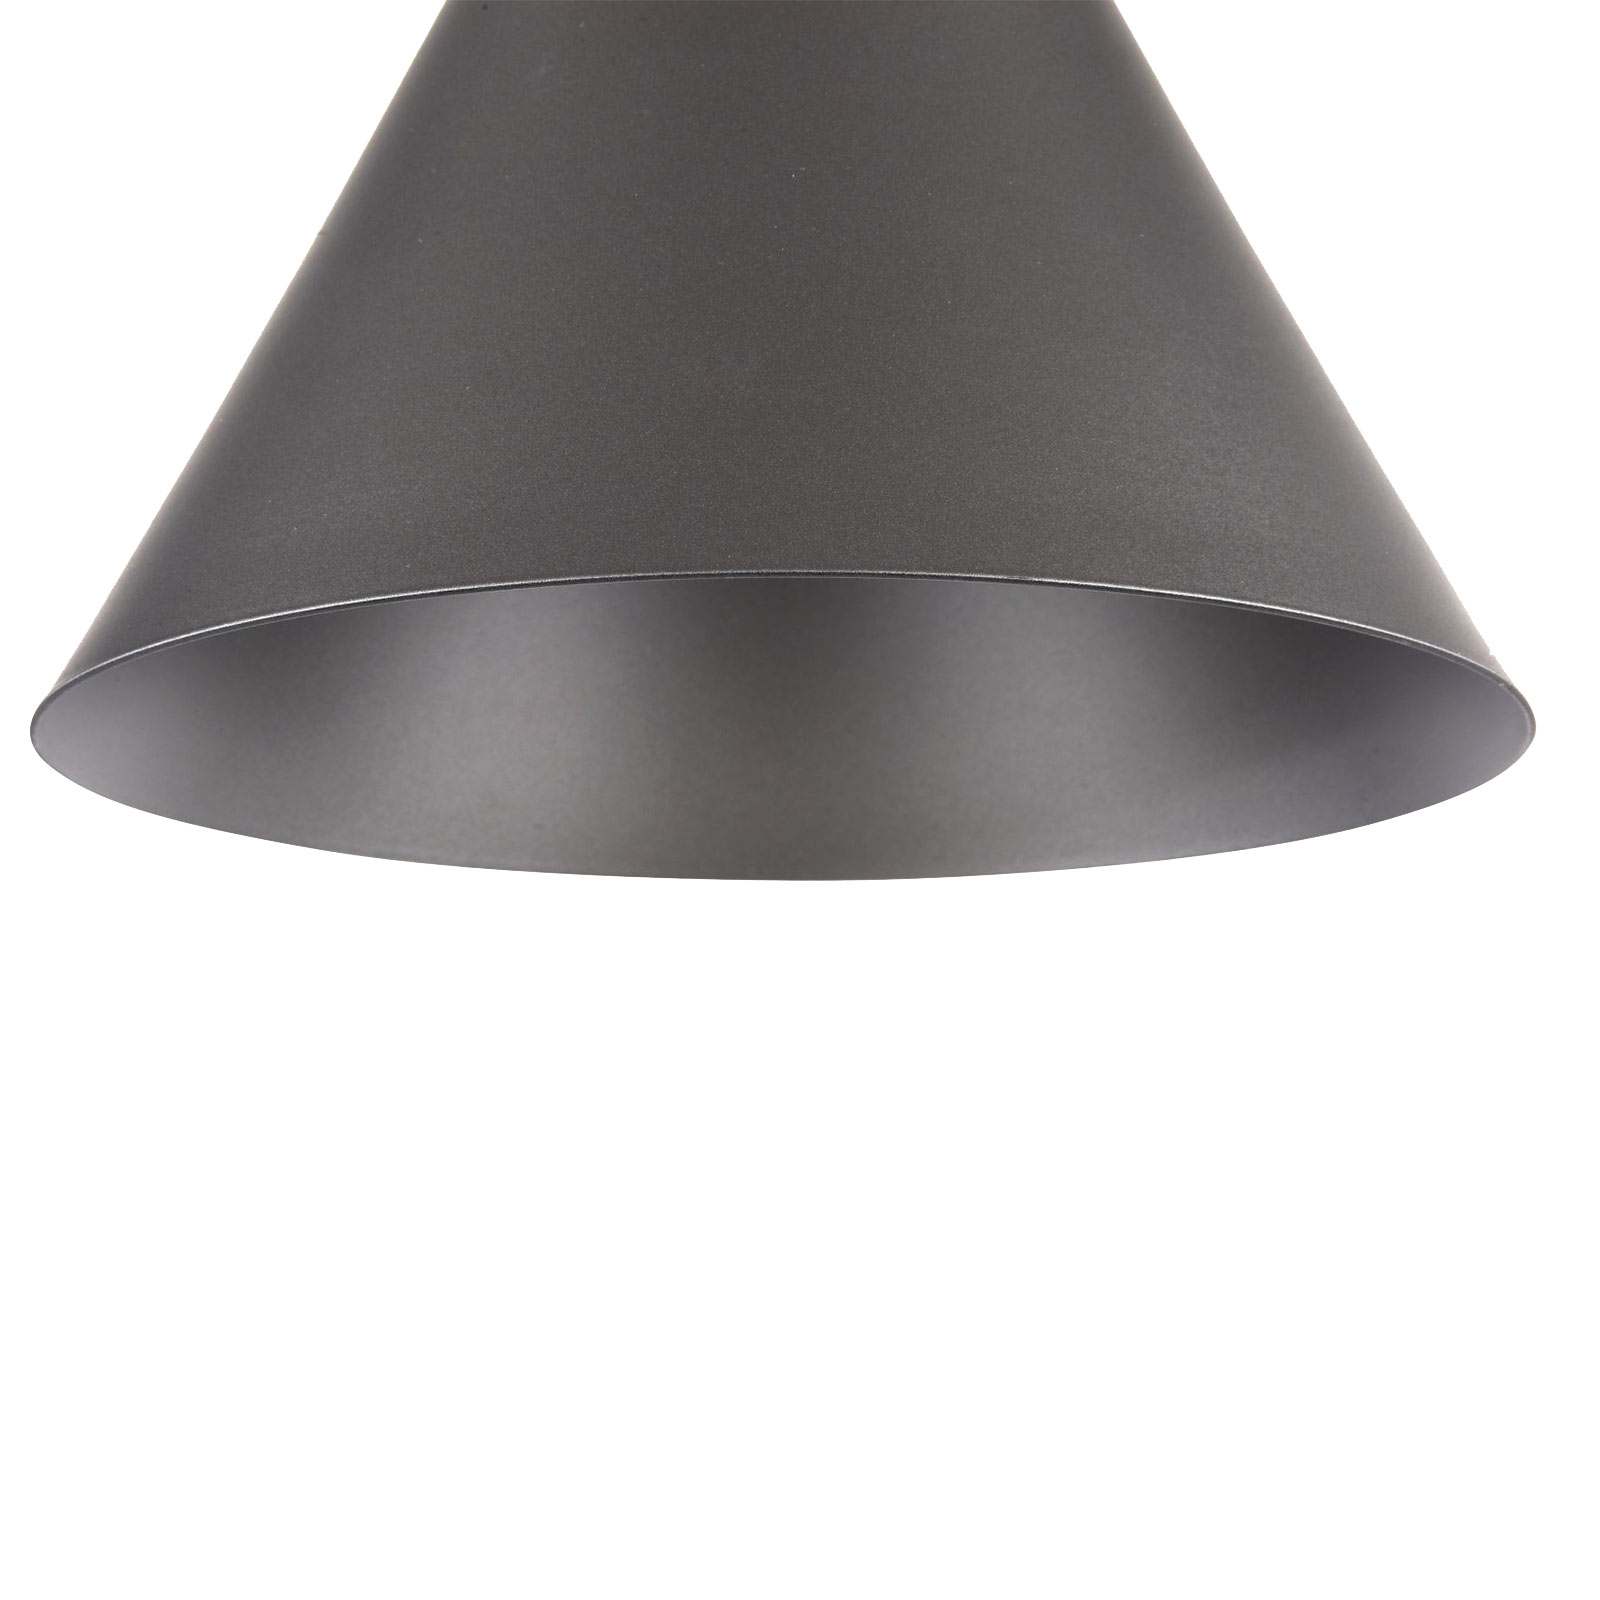 Hanglamp Bicones in zwart, Ø 22cm